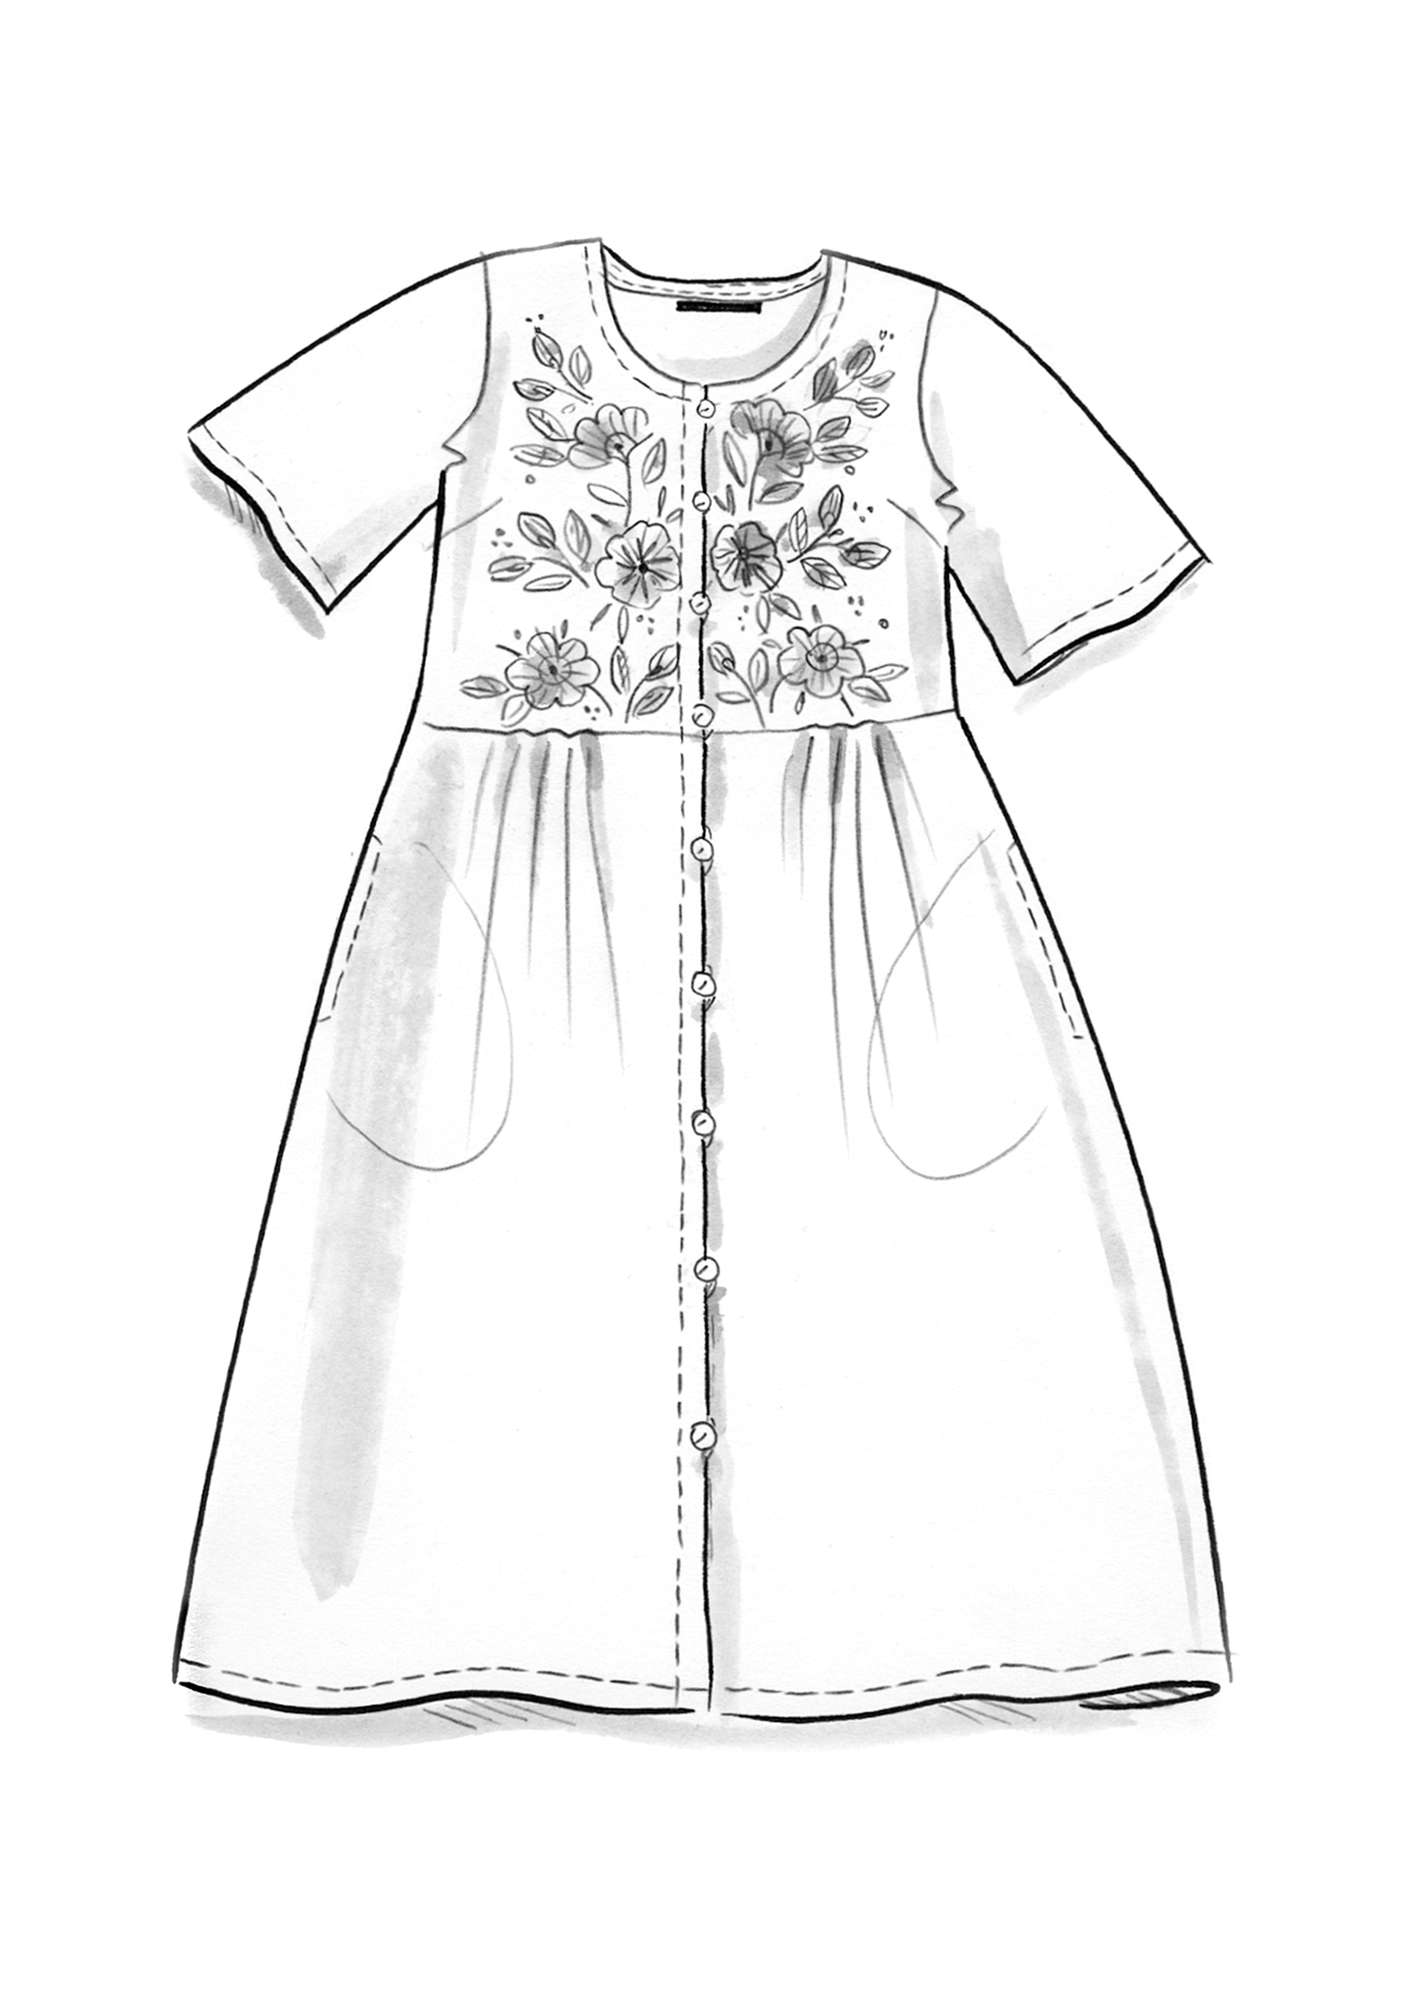 Vævet kjole  Margrethe  i økologisk bomuld/silke kleinblå